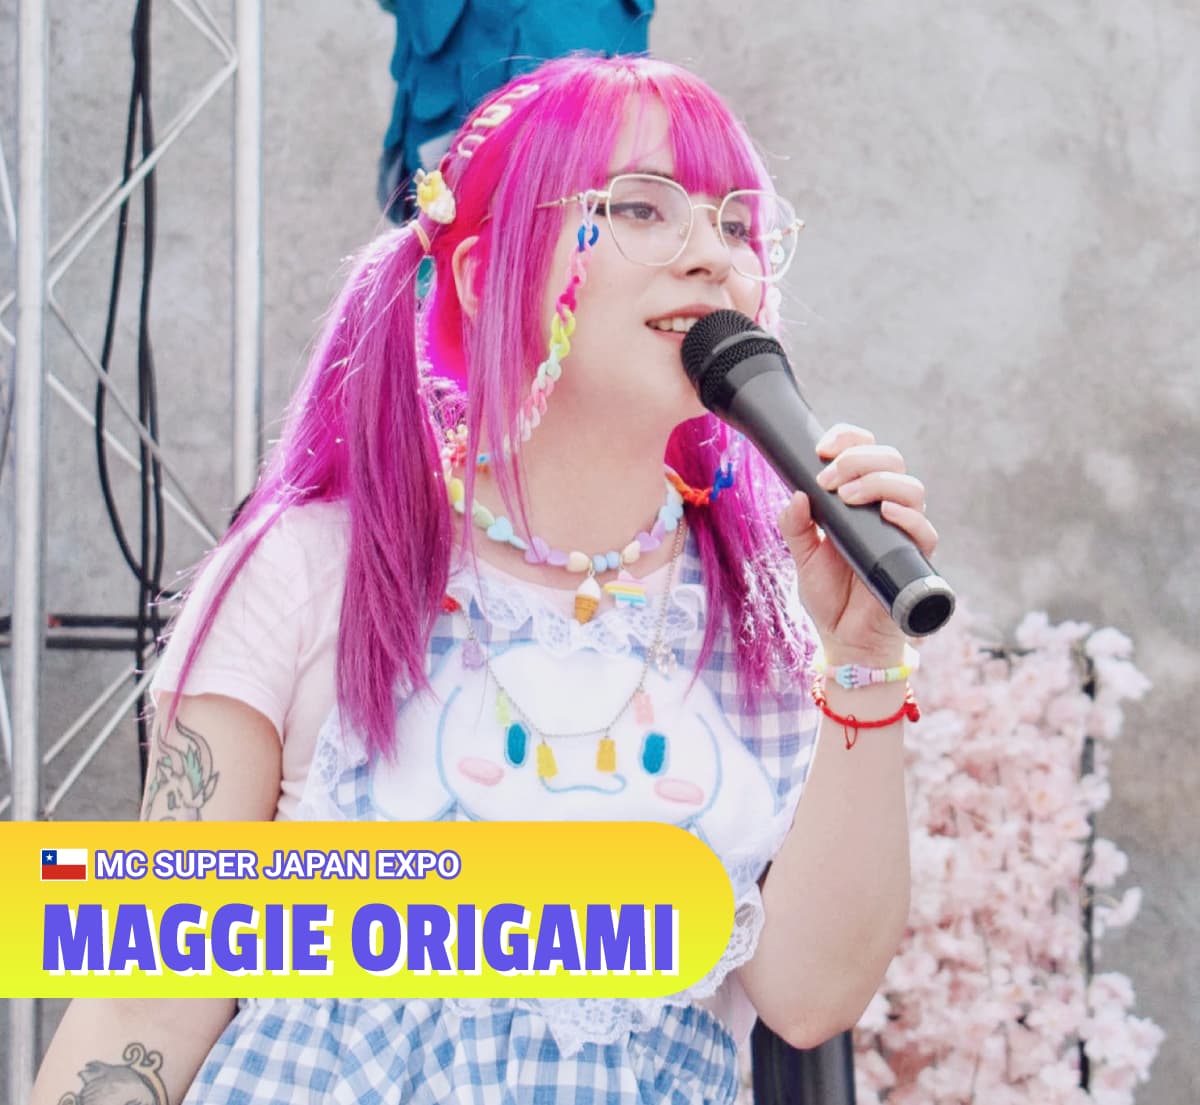 Maggie Origami - MC Super Japan Expo